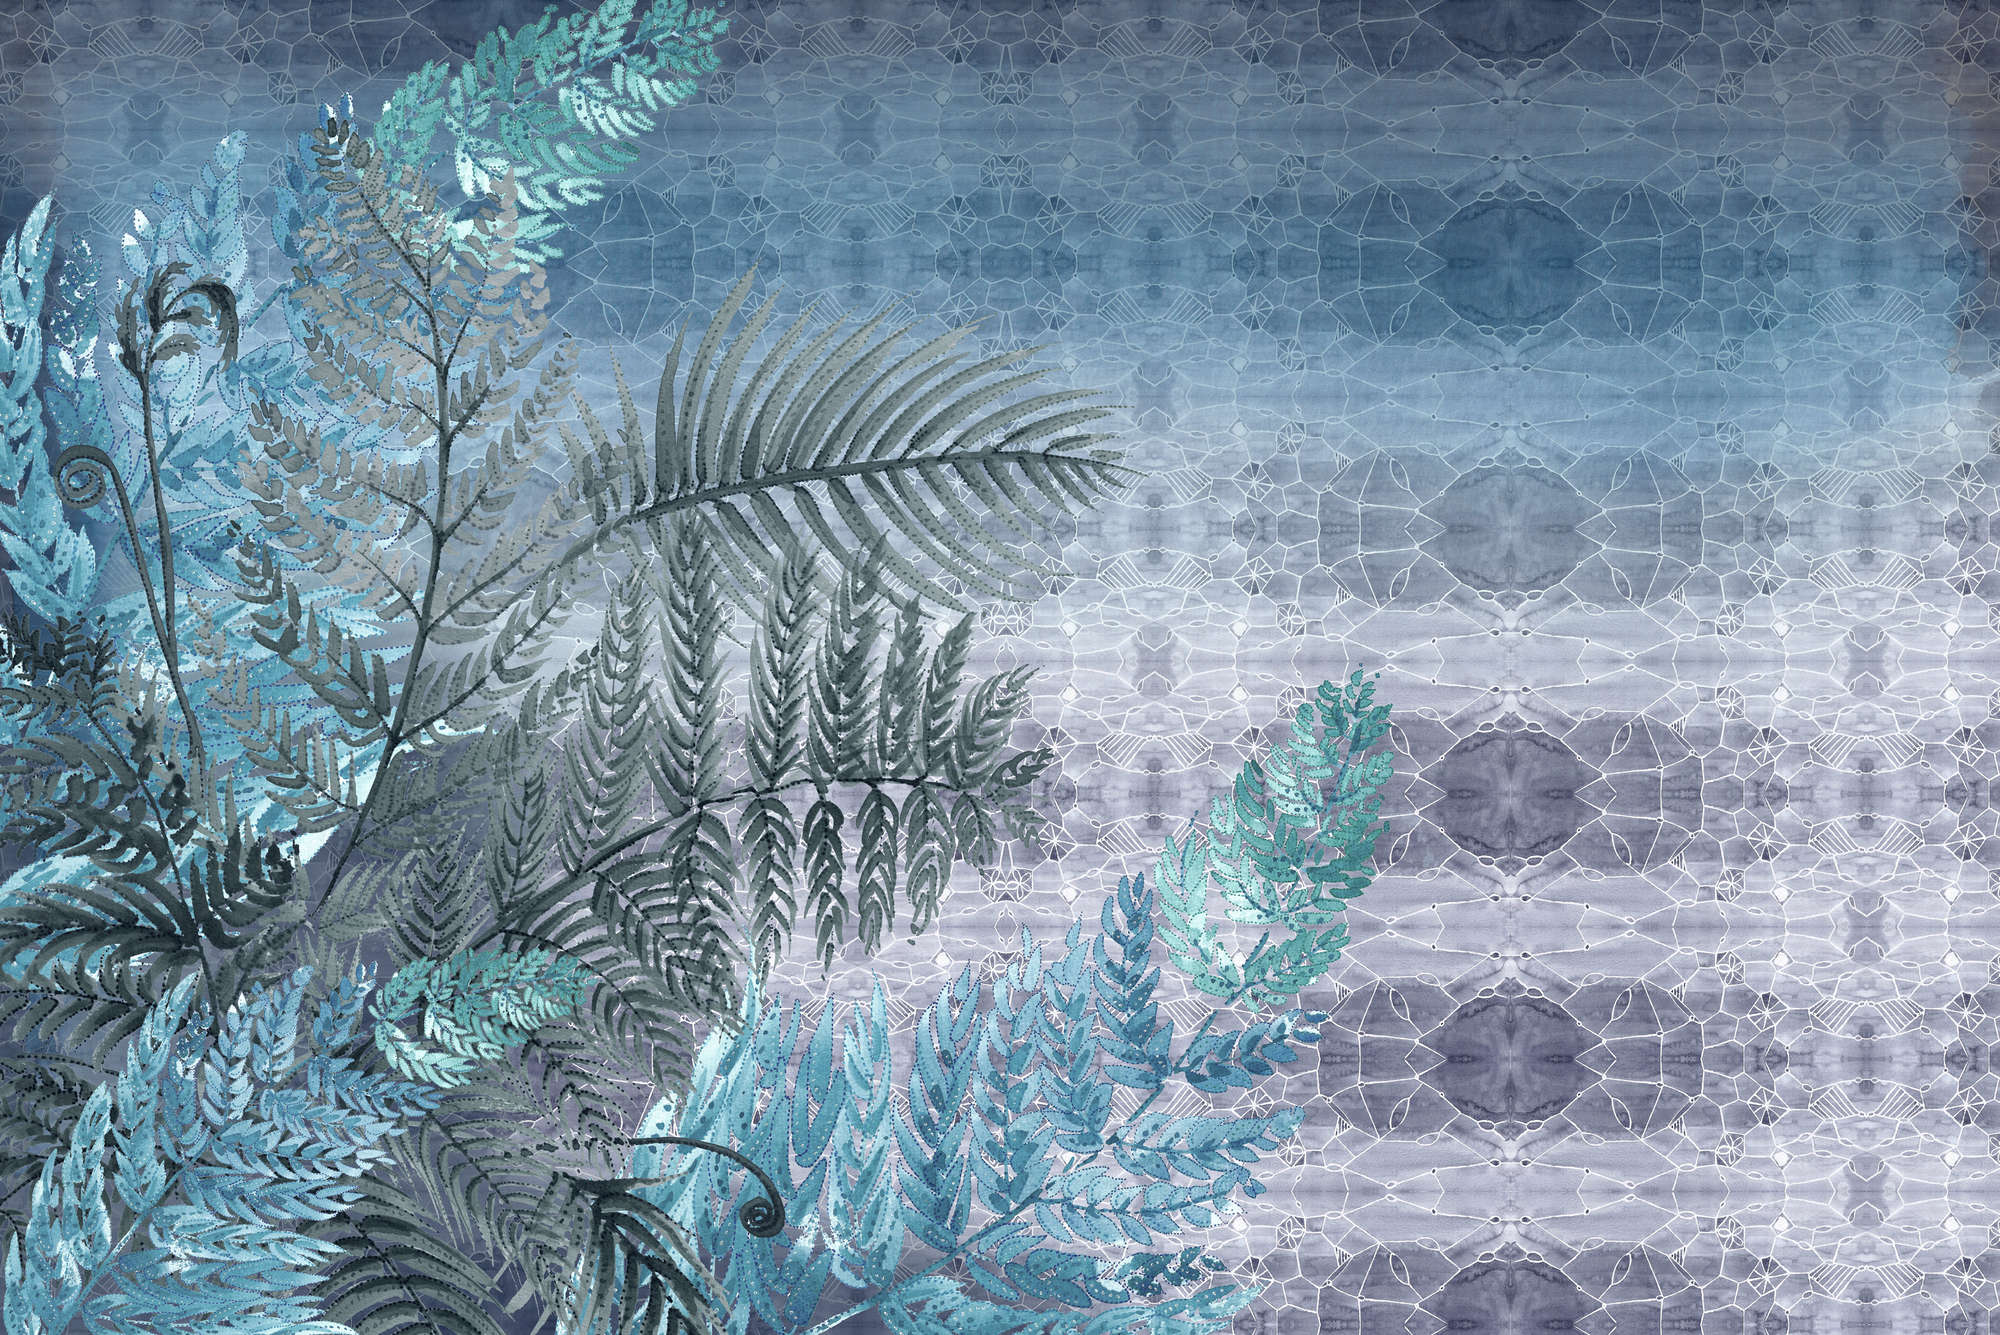             Aquarelbehang Varenpatroon in blauw en paars op premium glad nonwoven
        